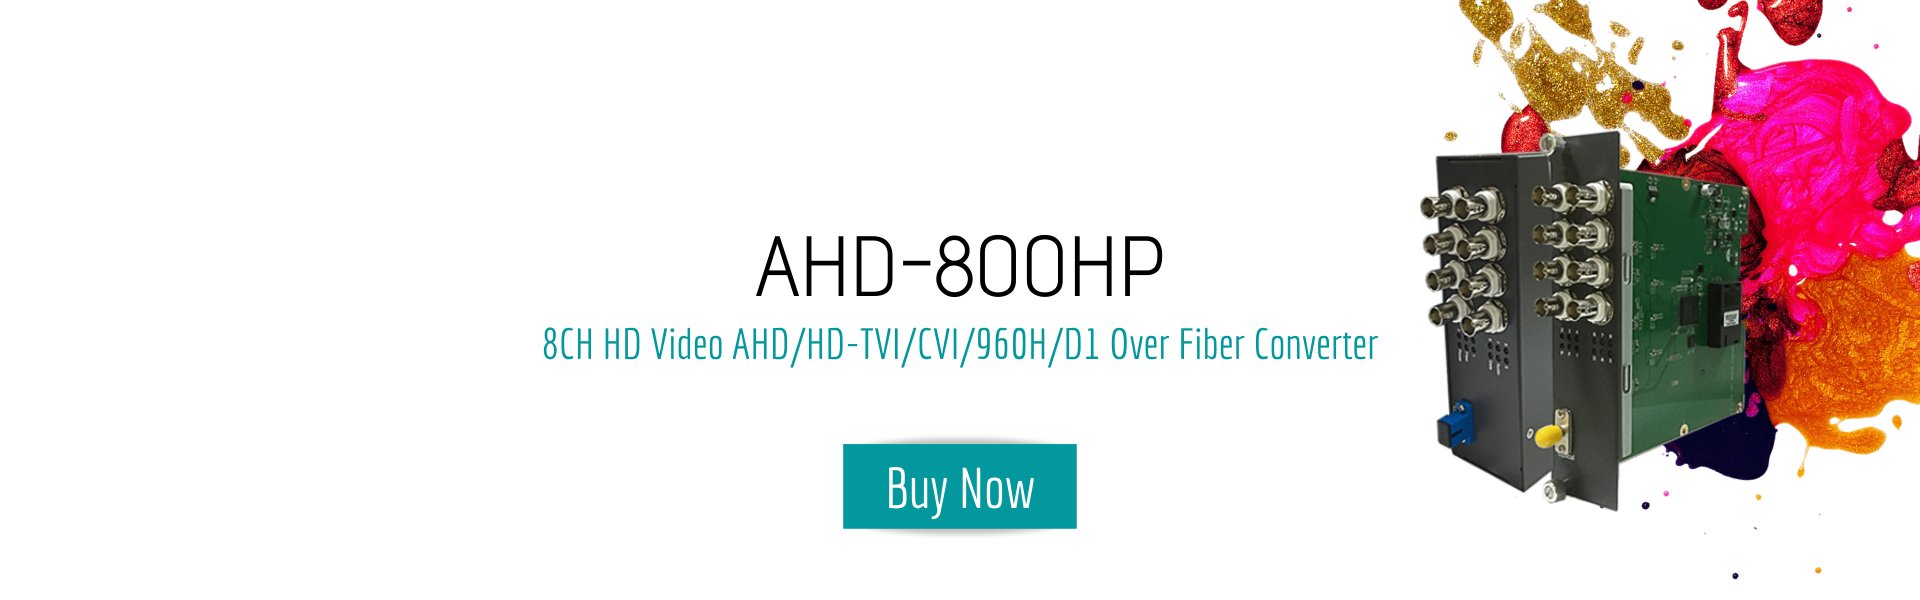 ahd-800hp-banner-optical-fiber-ahd